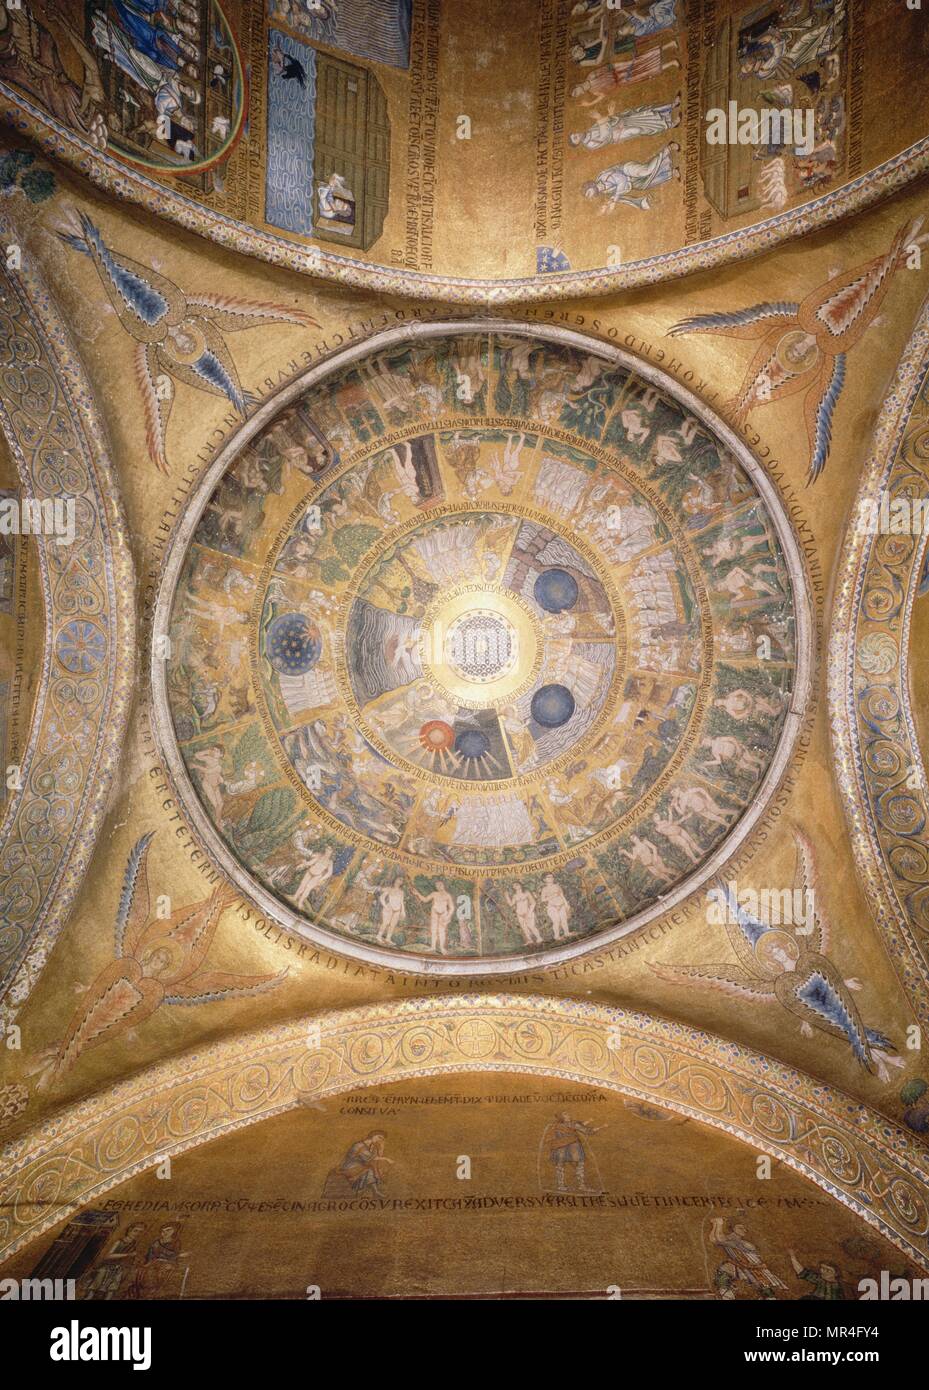 Mosaik, die biblische Schöpfungsgeschichte auf der Kuppel des 12. Jahrhunderts, die Römisch-katholische Kathedrale, Basilika von San Marco, Venedig, Italien. Eines der besten Beispiele für Italo-Byzantine Architektur. Stockfoto